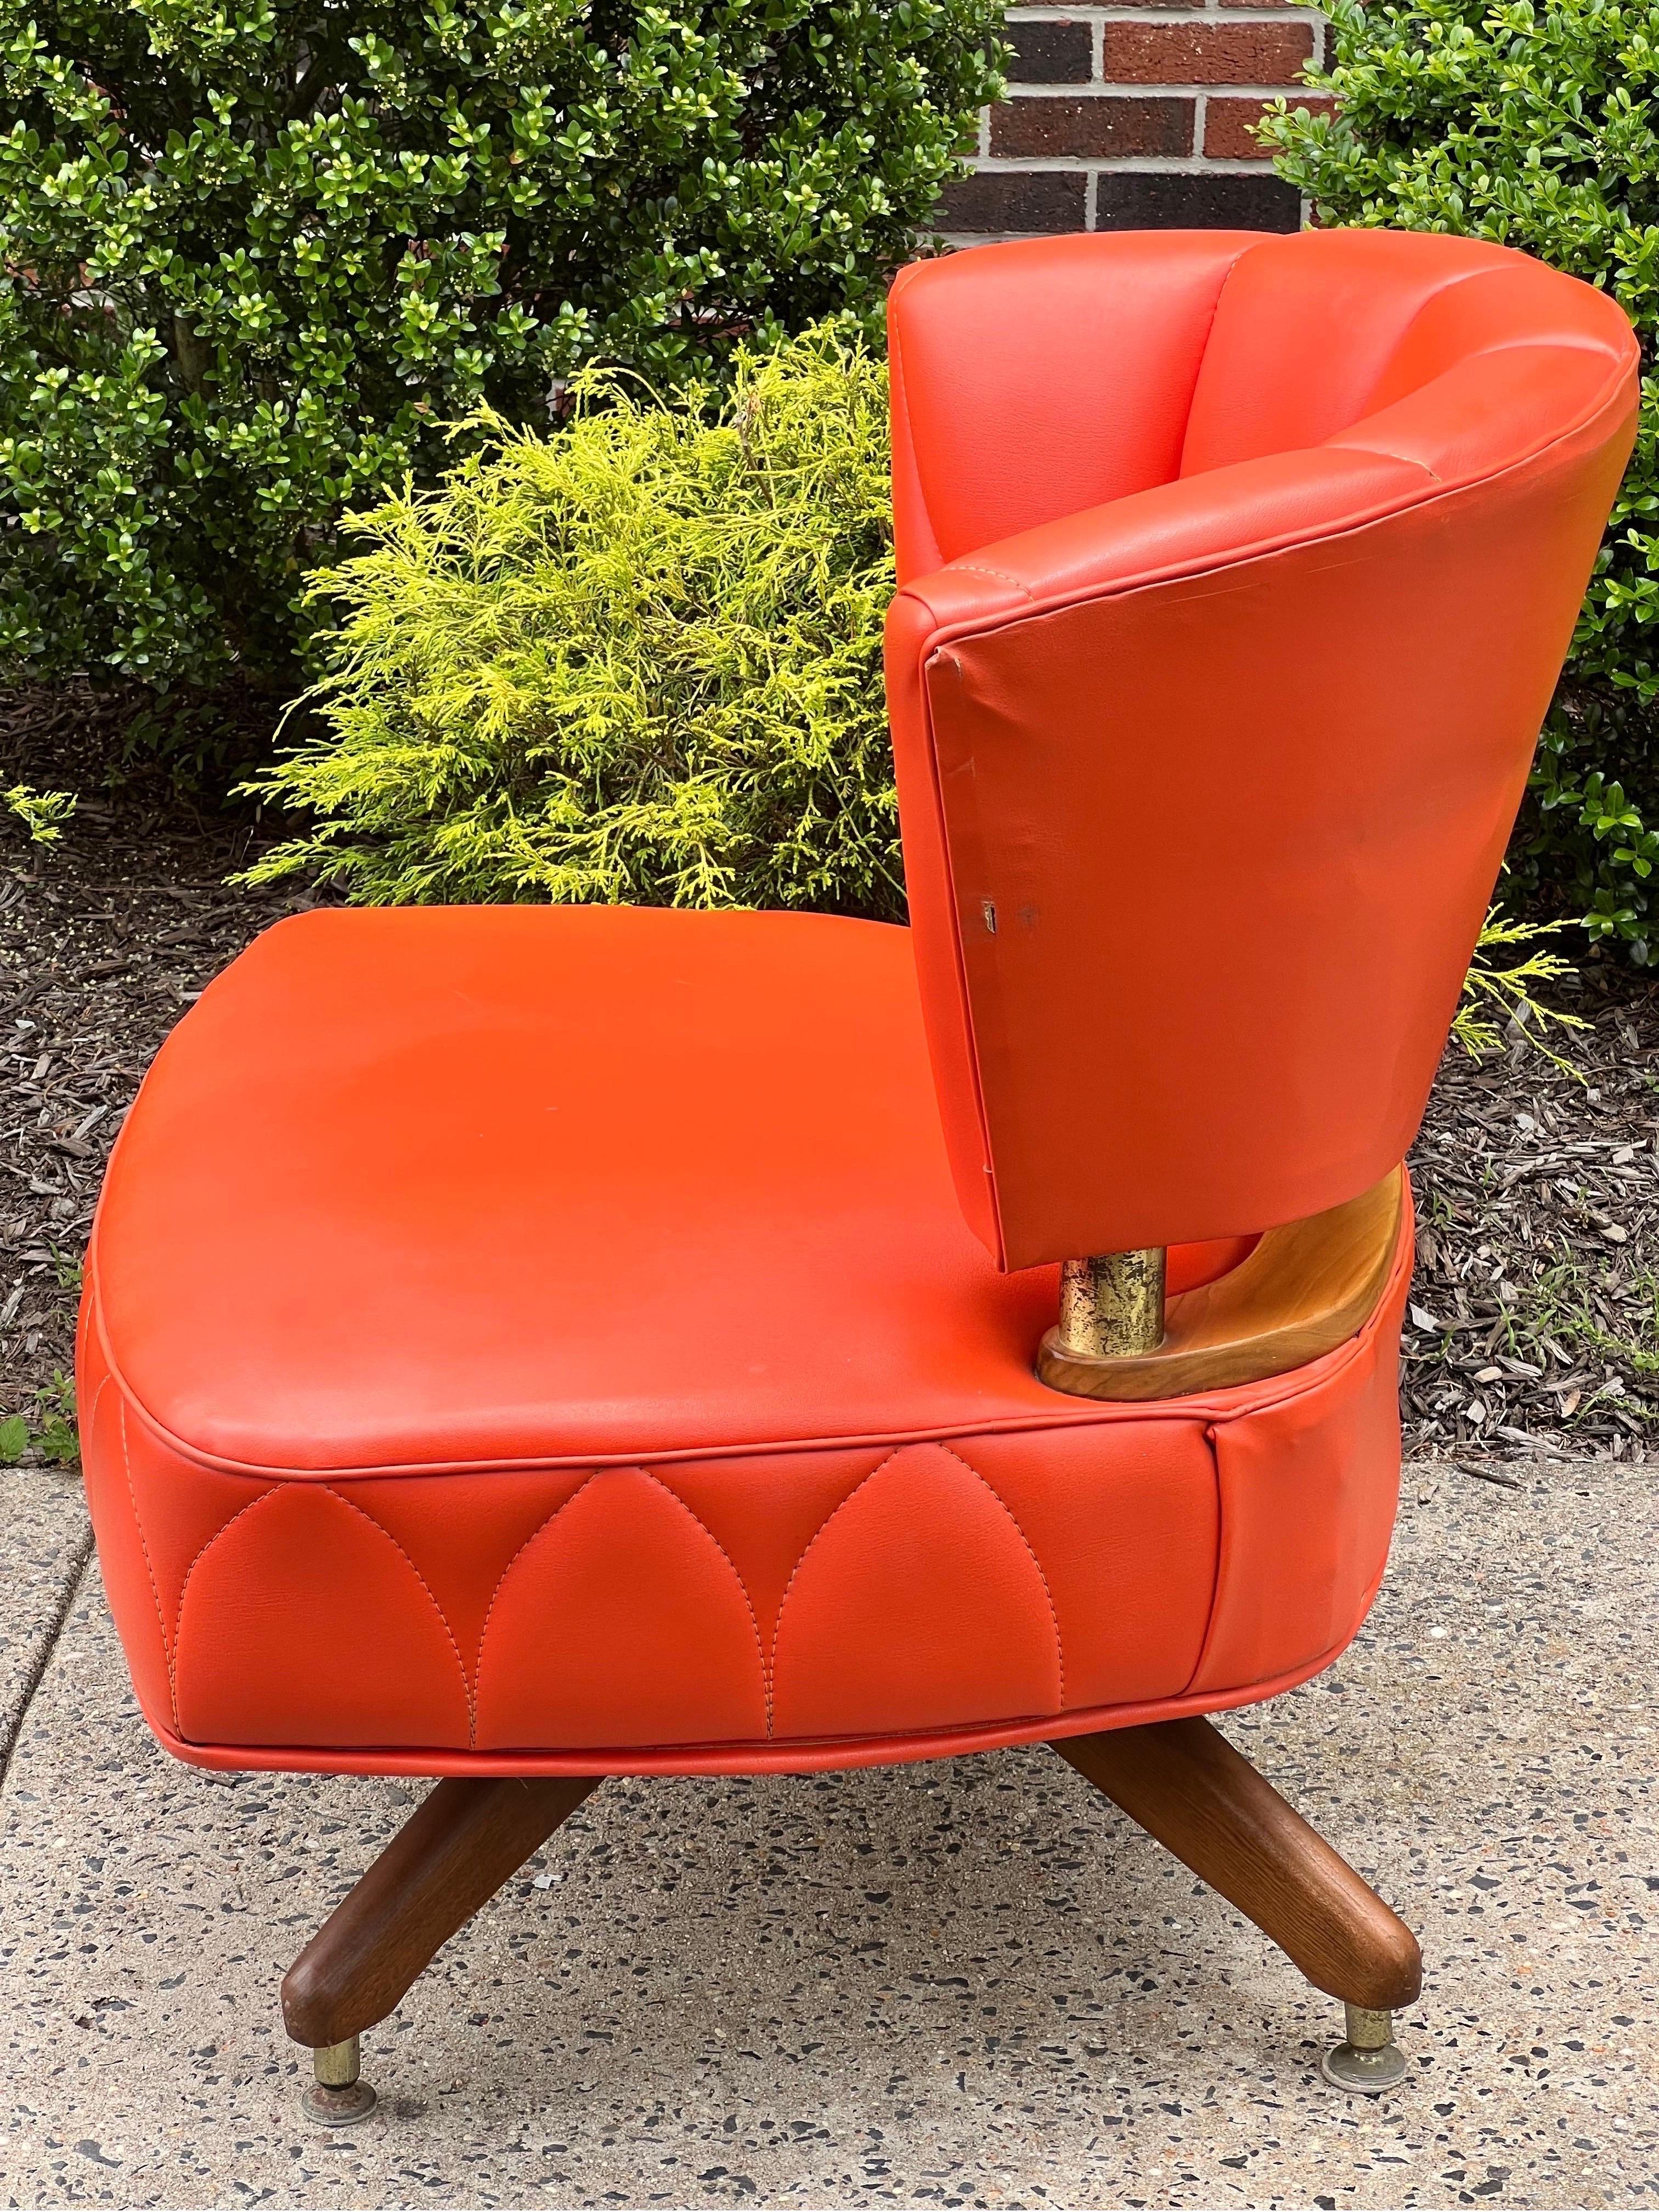 Fabelhafter Vintage-Drehsessel von Kroehler, 1962.

Ein wunderschöner Stuhl, gepolstert in einem leuchtenden orangefarbenen Kunstleder mit einzigartigem Nahtmuster. Die Farbe der Polsterung hat ihre Vitalität bewahrt und ist nicht verblasst. Der